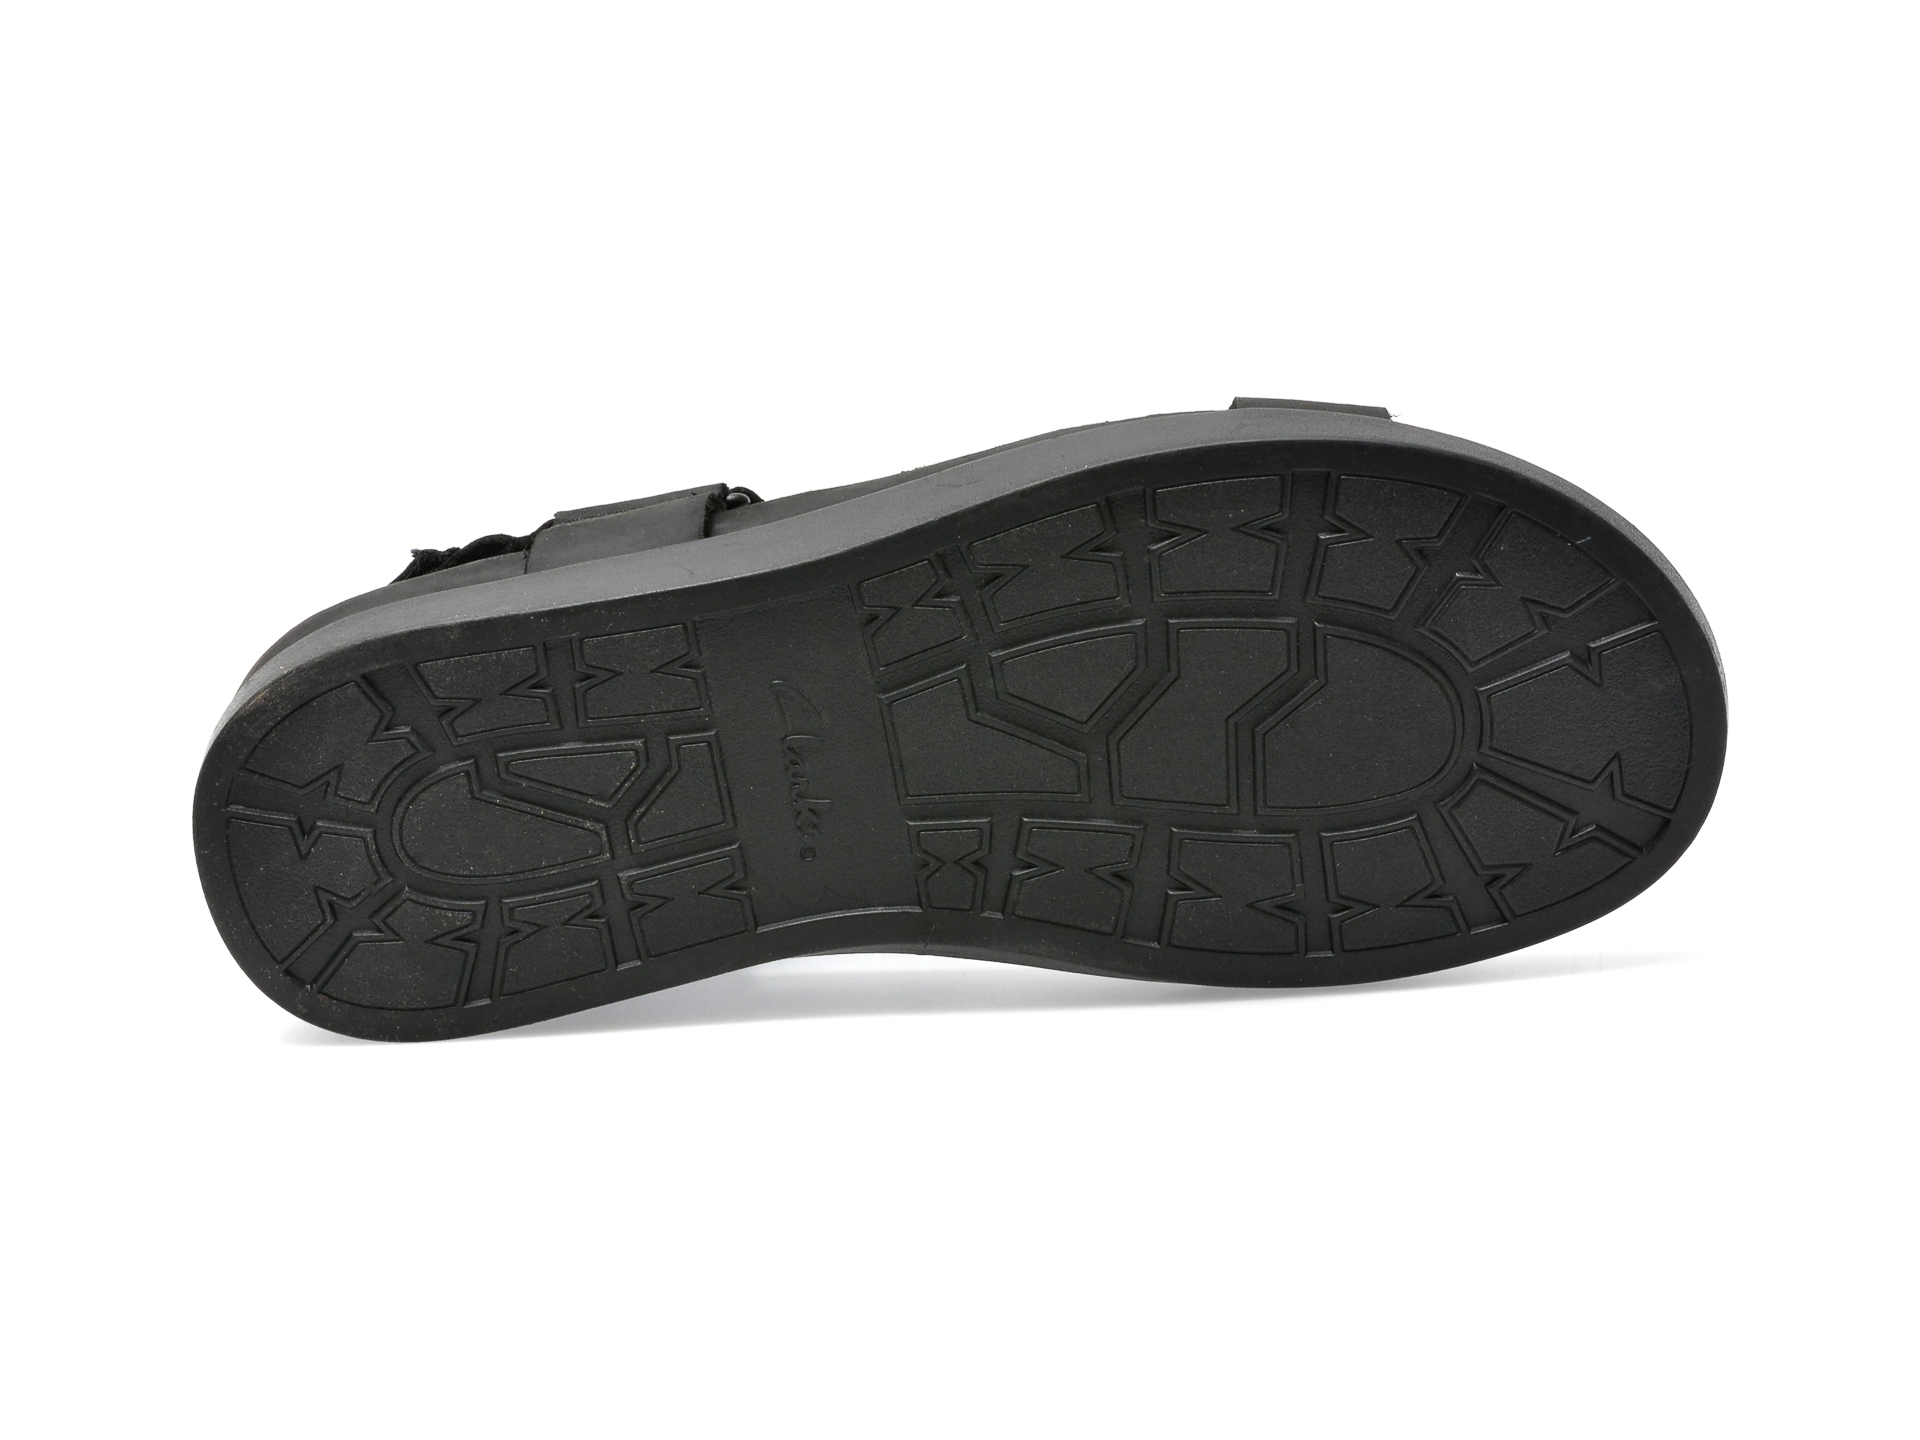 Sandale CLARKS negre, SUNDER RANGE 01-N, din piele naturala